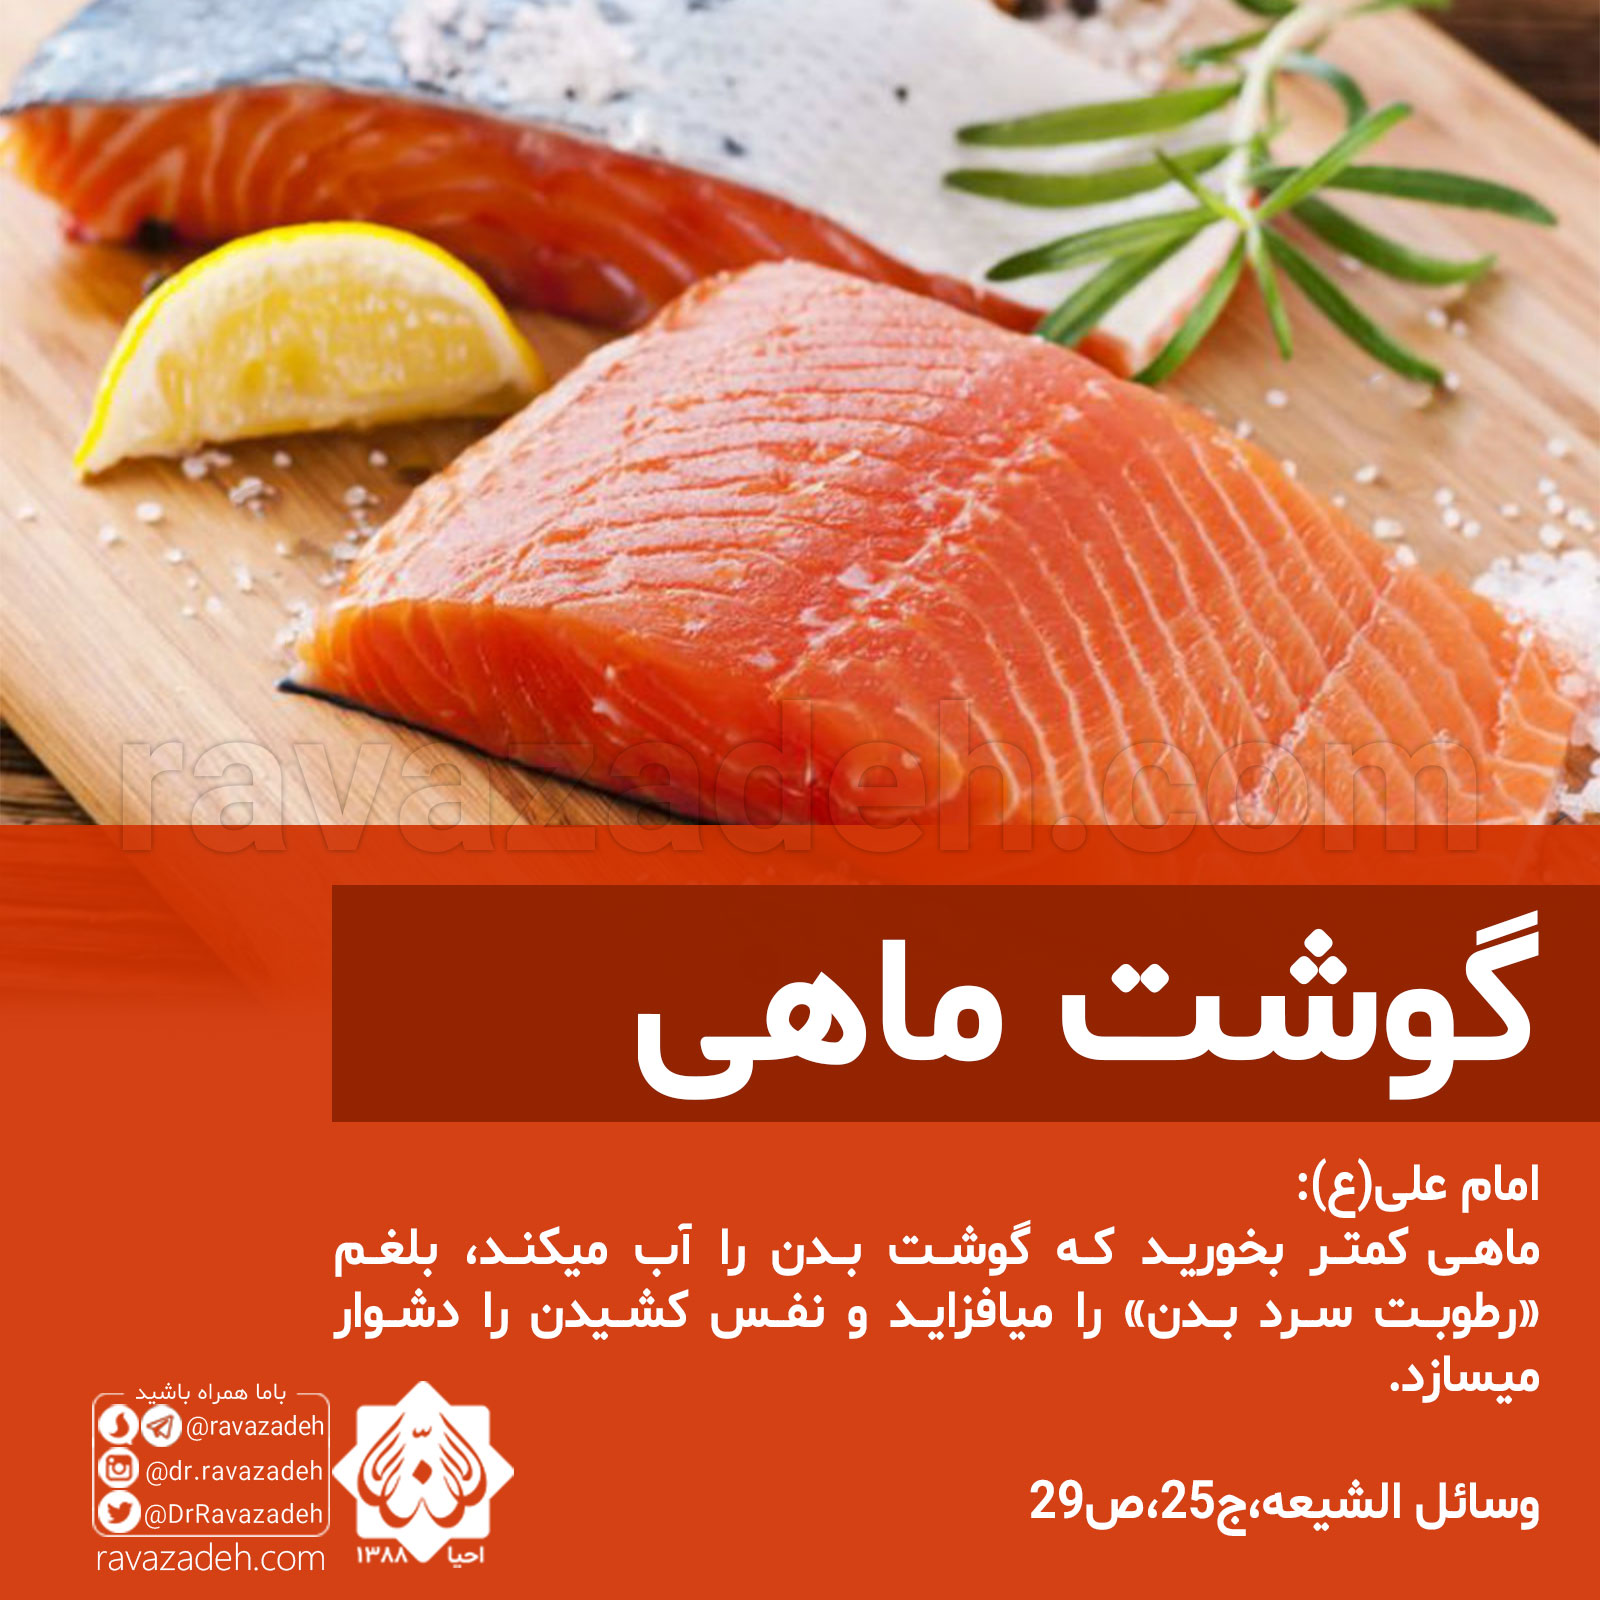 تصویر از گوشت ماهی کمتر بخورید